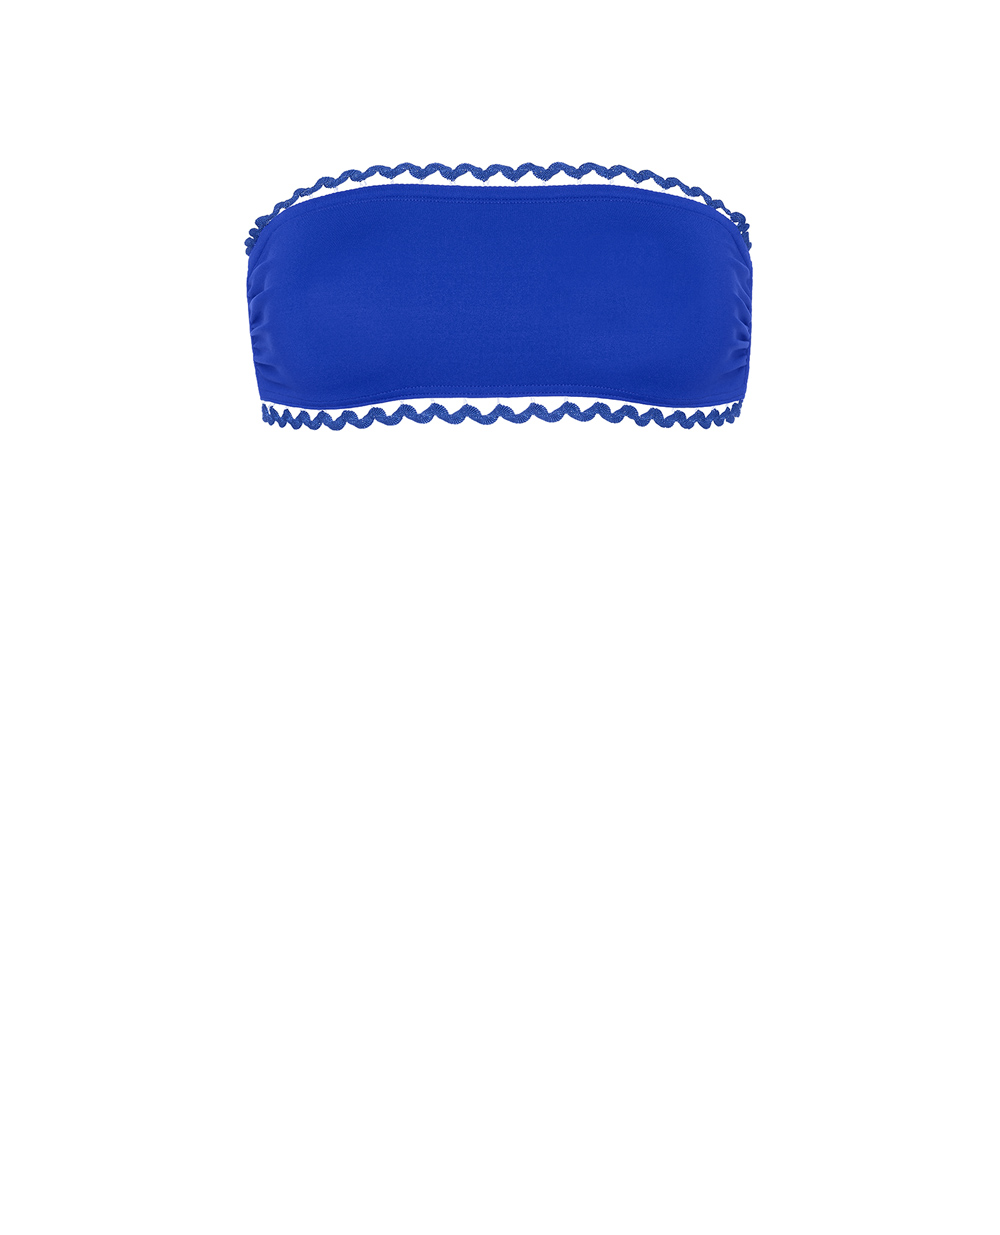 Топ купальника MIX ERES 032413, синий цвет • Купить в интернет-магазине Kameron